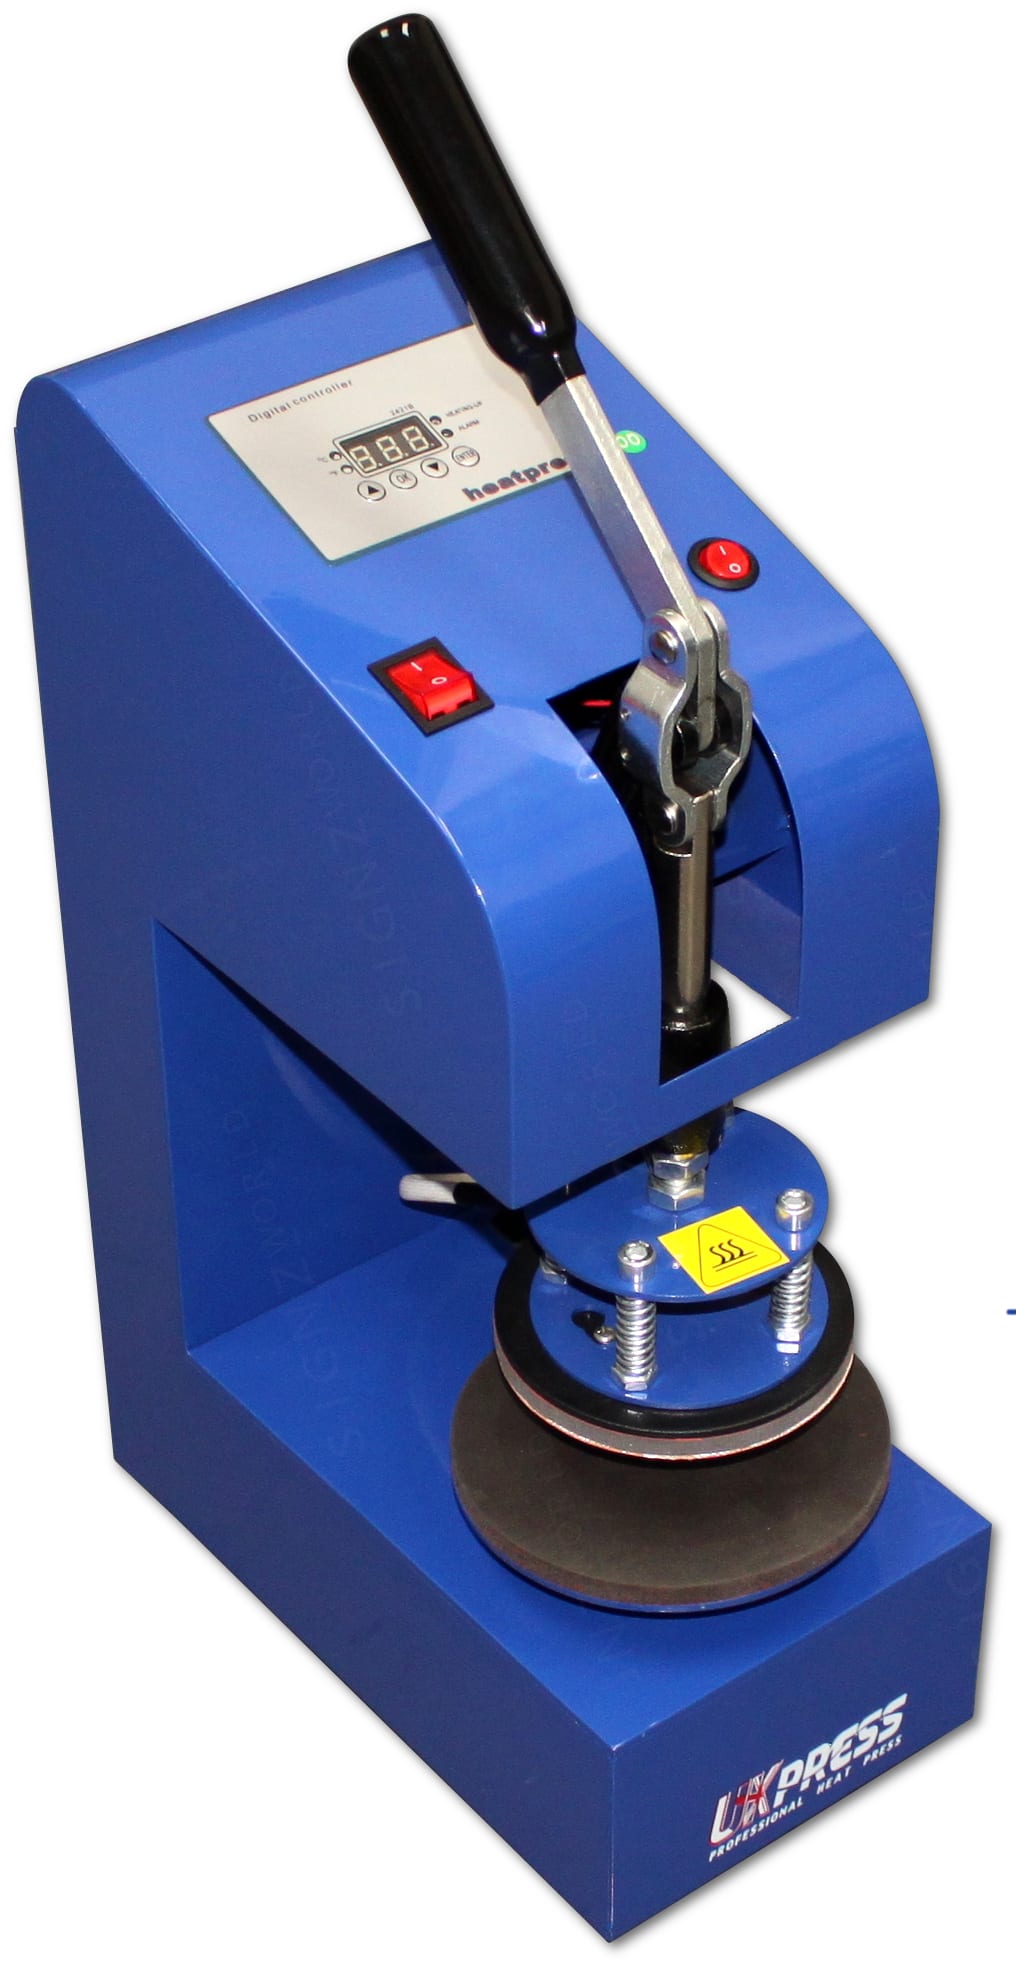 12cm Plate Heat Press Sublimation Machine PT110